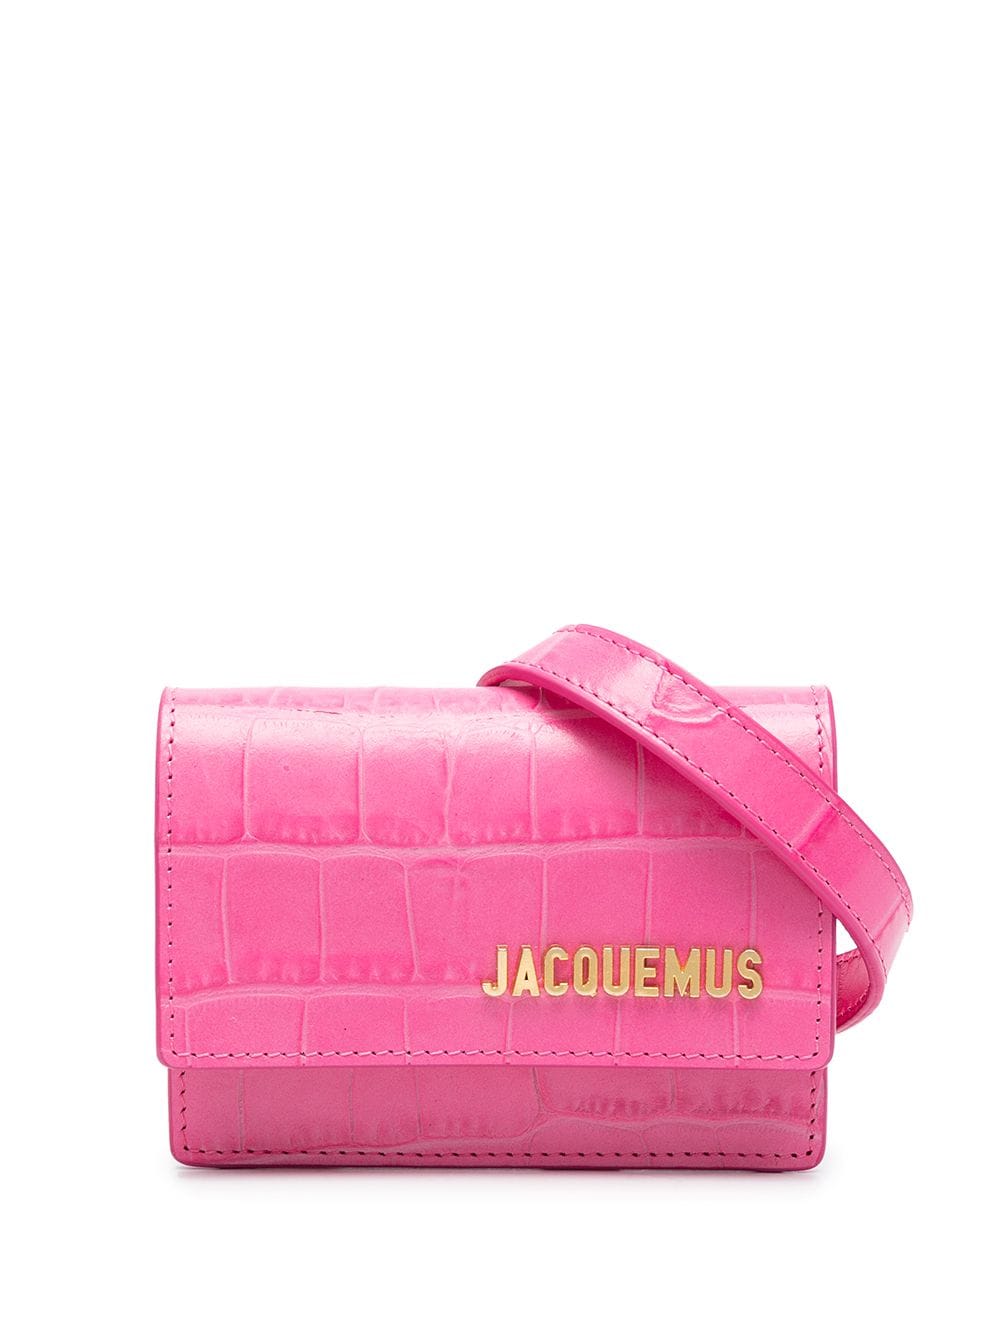 фото Jacquemus поясная сумка с тиснением под кожу крокодила и логотипом